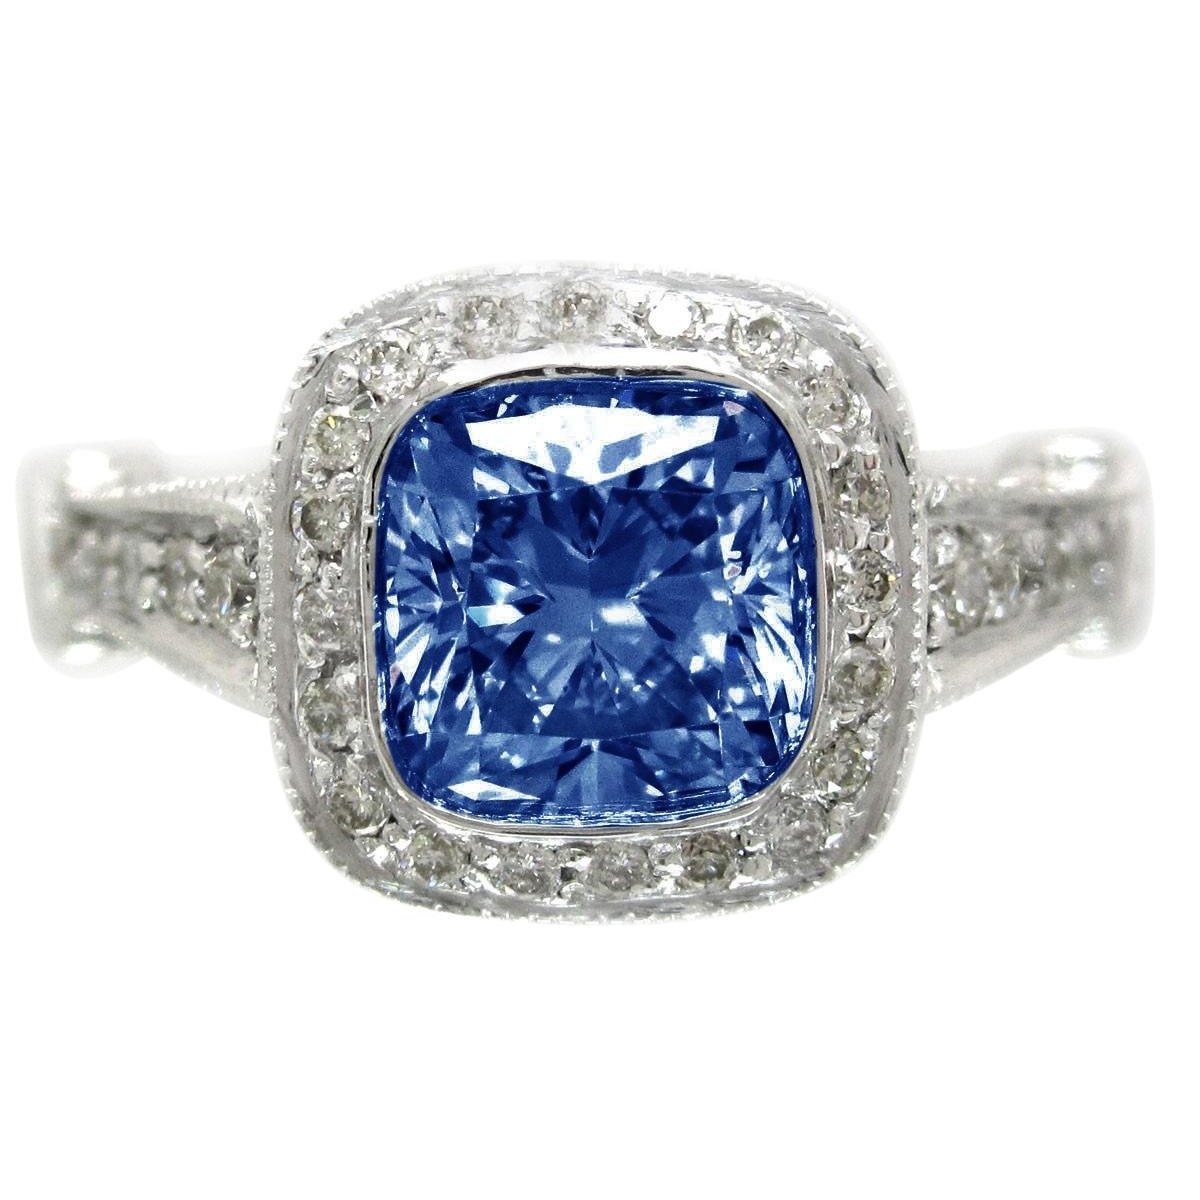 5.01 carats bleu saphir coussin halo diamant bague bijoux - HarryChadEnt.FR